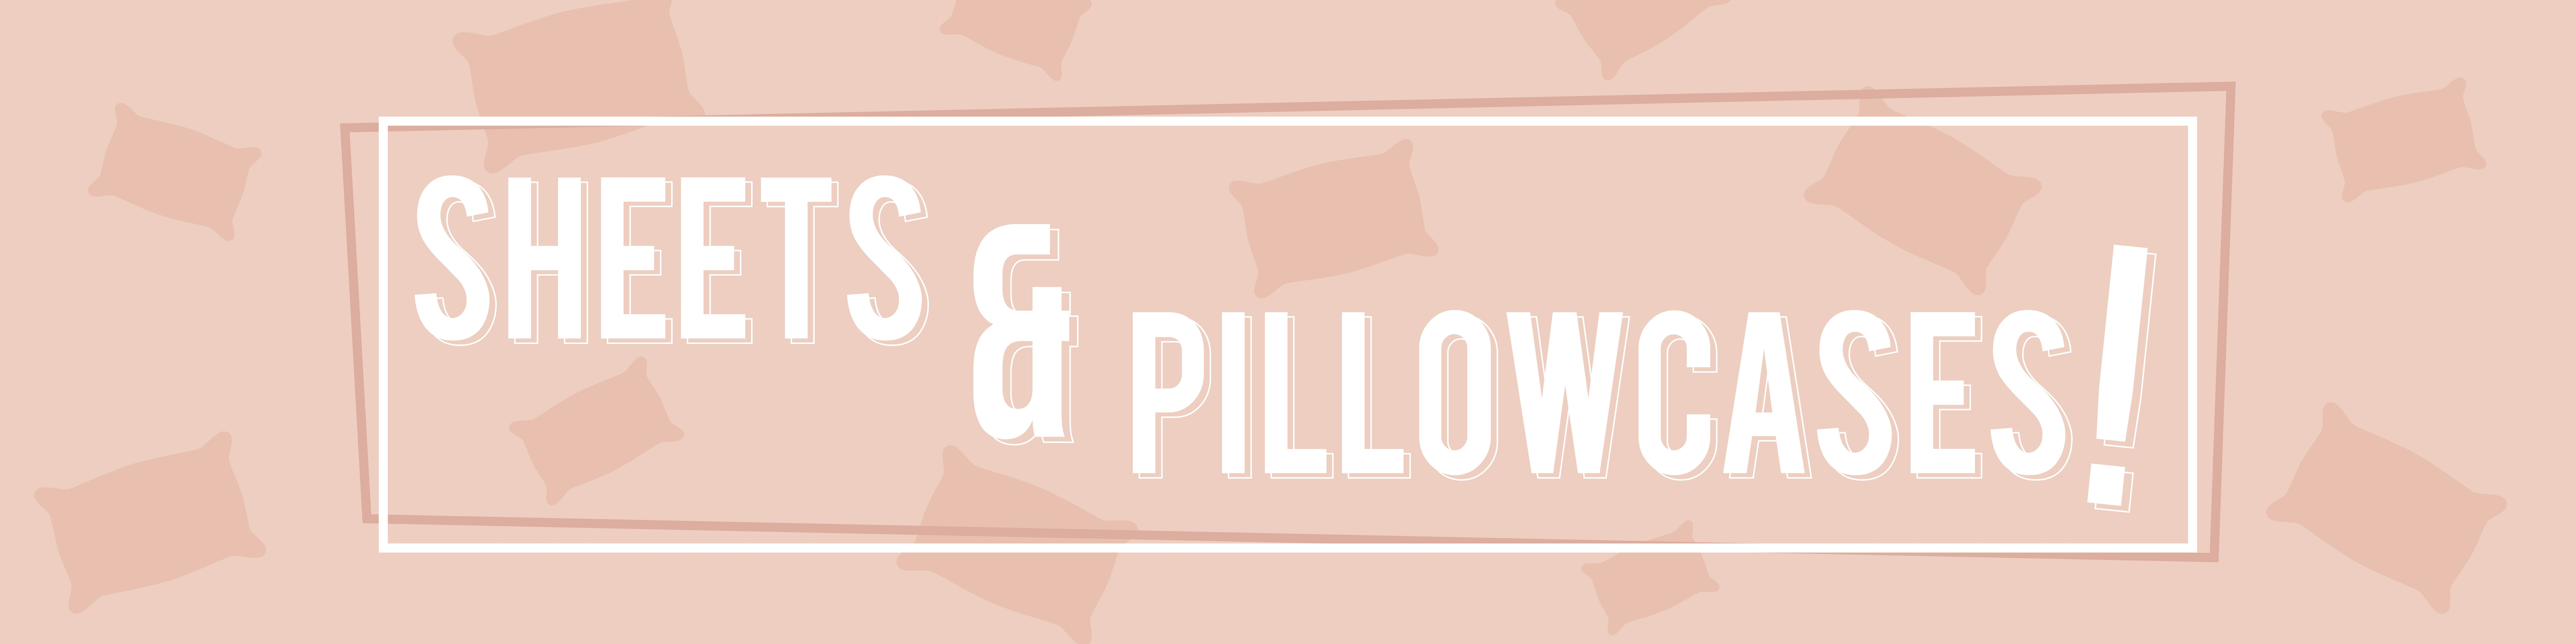 Sheets & Pillowcases Image 